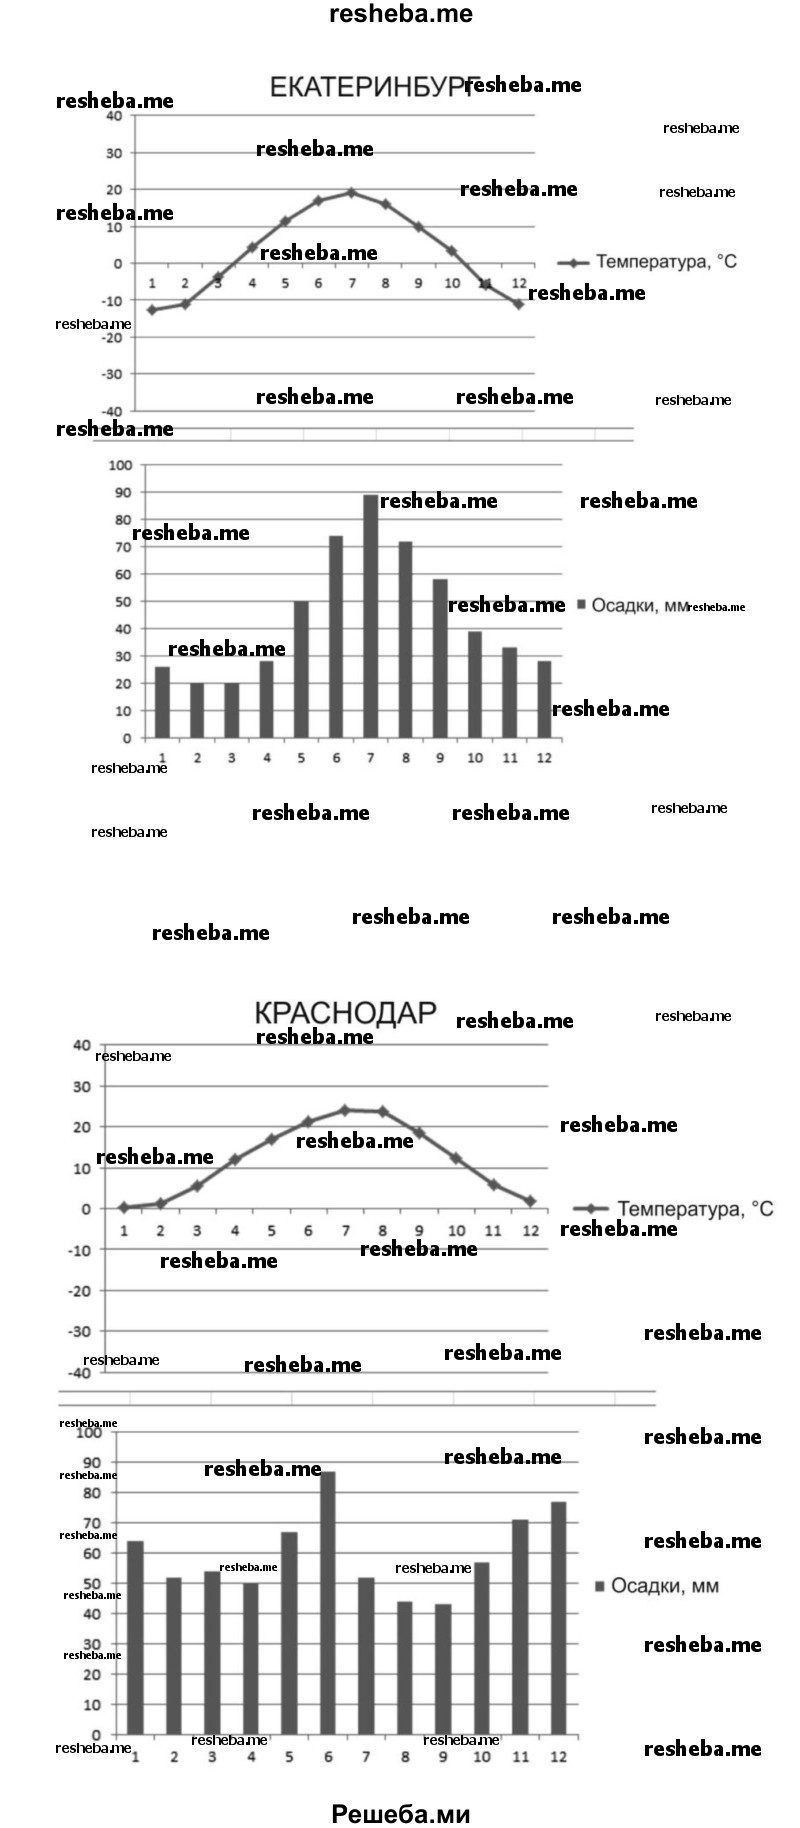 Используя данные таблицы, постройте климатические диаграммы для Краснодара, Екатеринбурга, Хабаровска и установите, каким типам климата они соответствуют